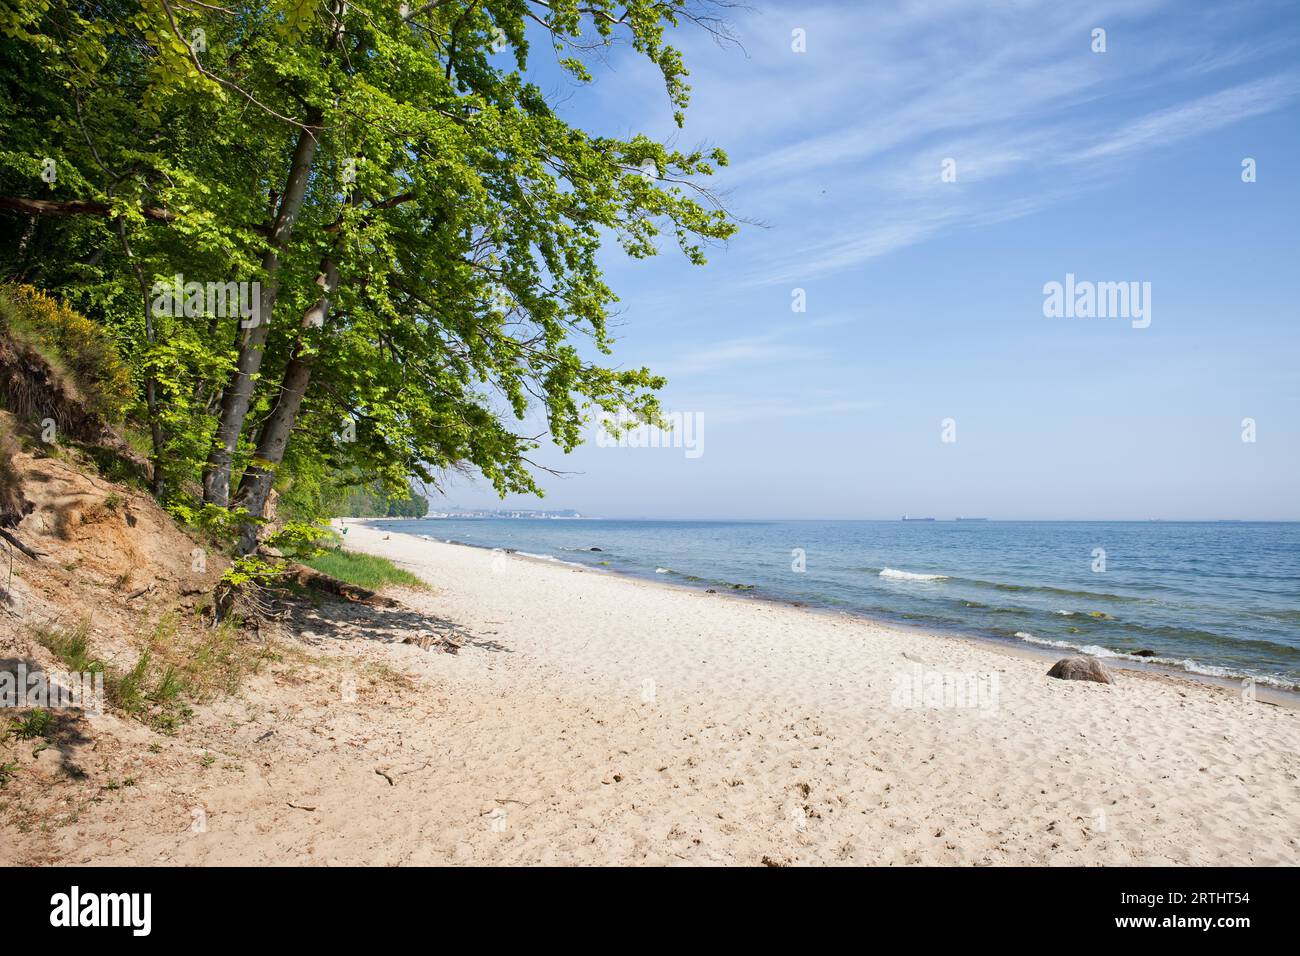 Plage de sable de la mer Baltique dans la ville de Gdynia, Pologne Banque D'Images